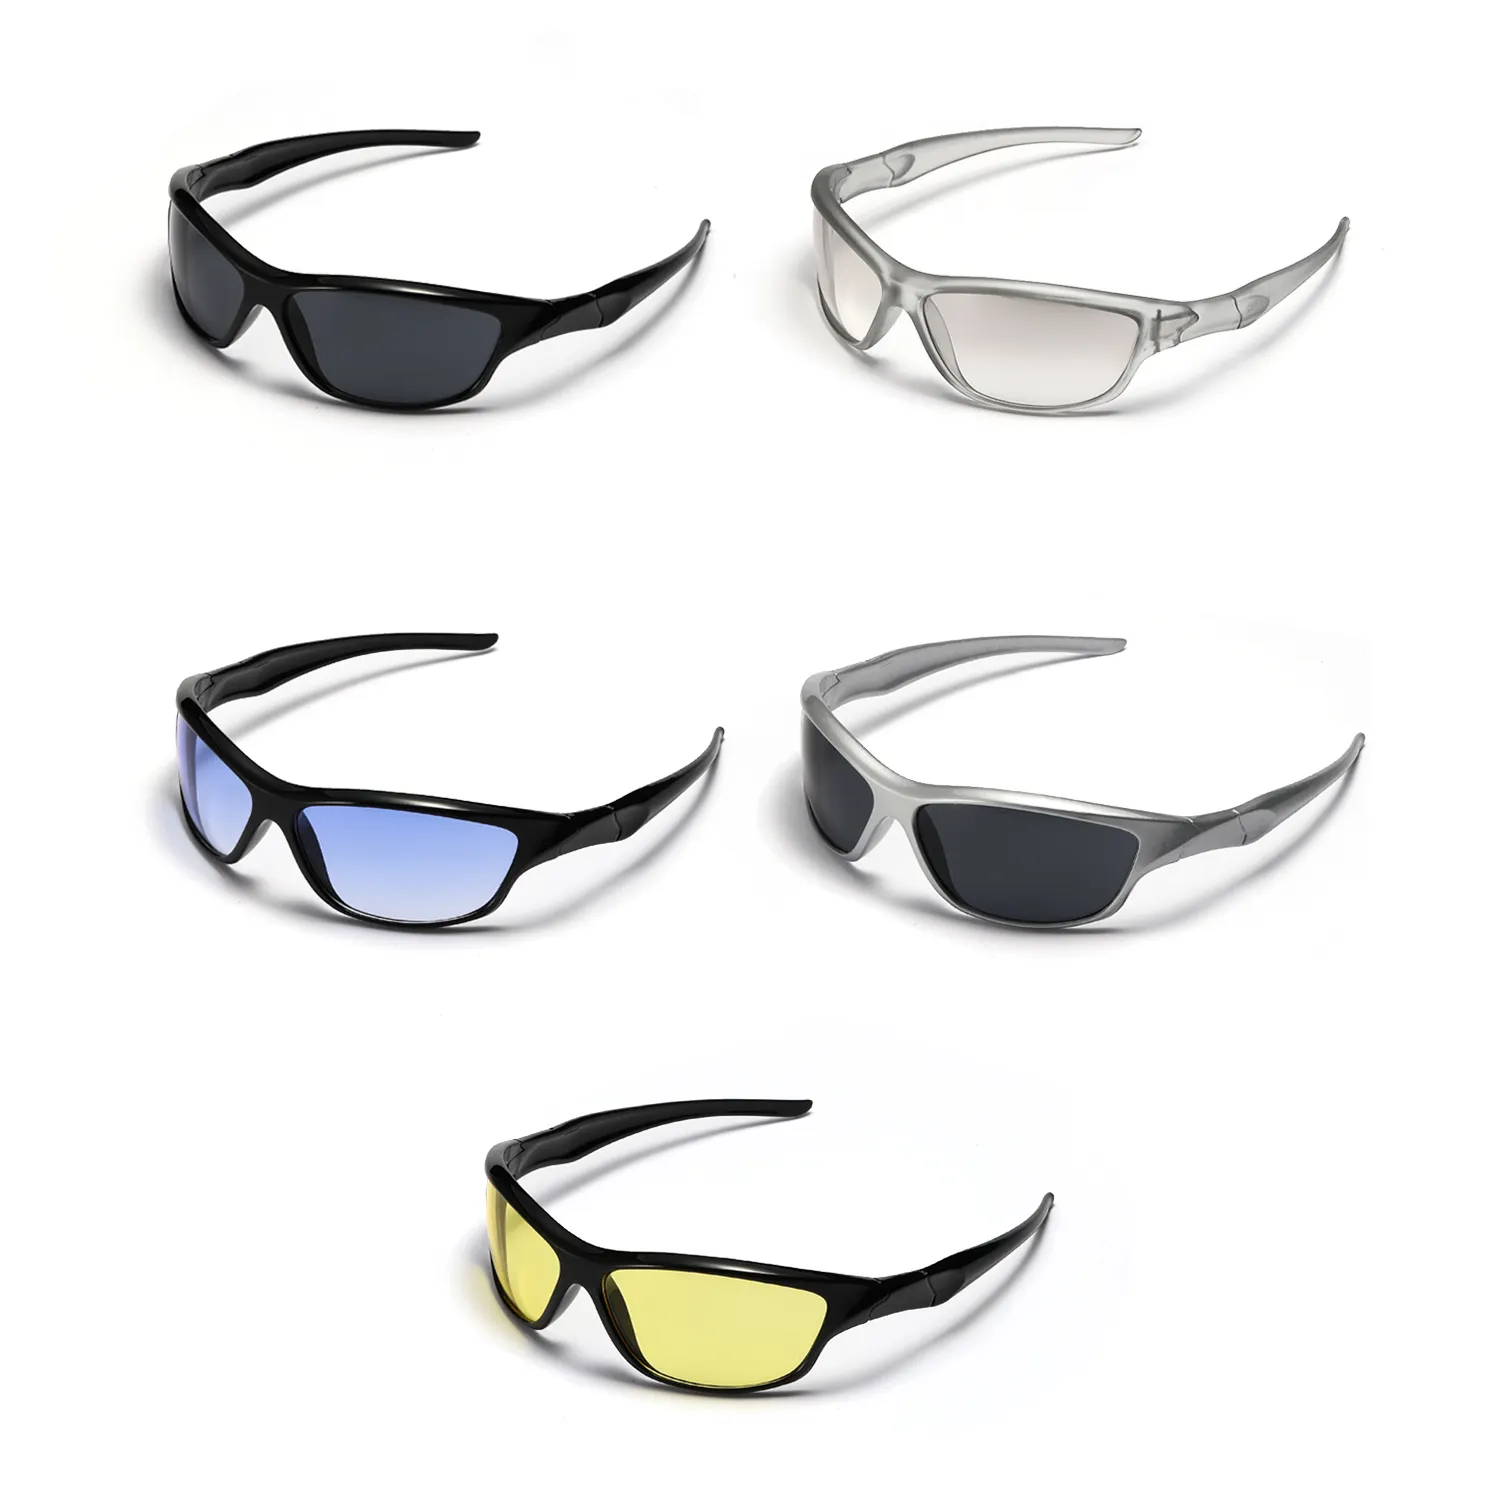 Yüksek performanslı açık spor gözlüğü koşu güneş gözlüğü kriket bisiklet gözlük